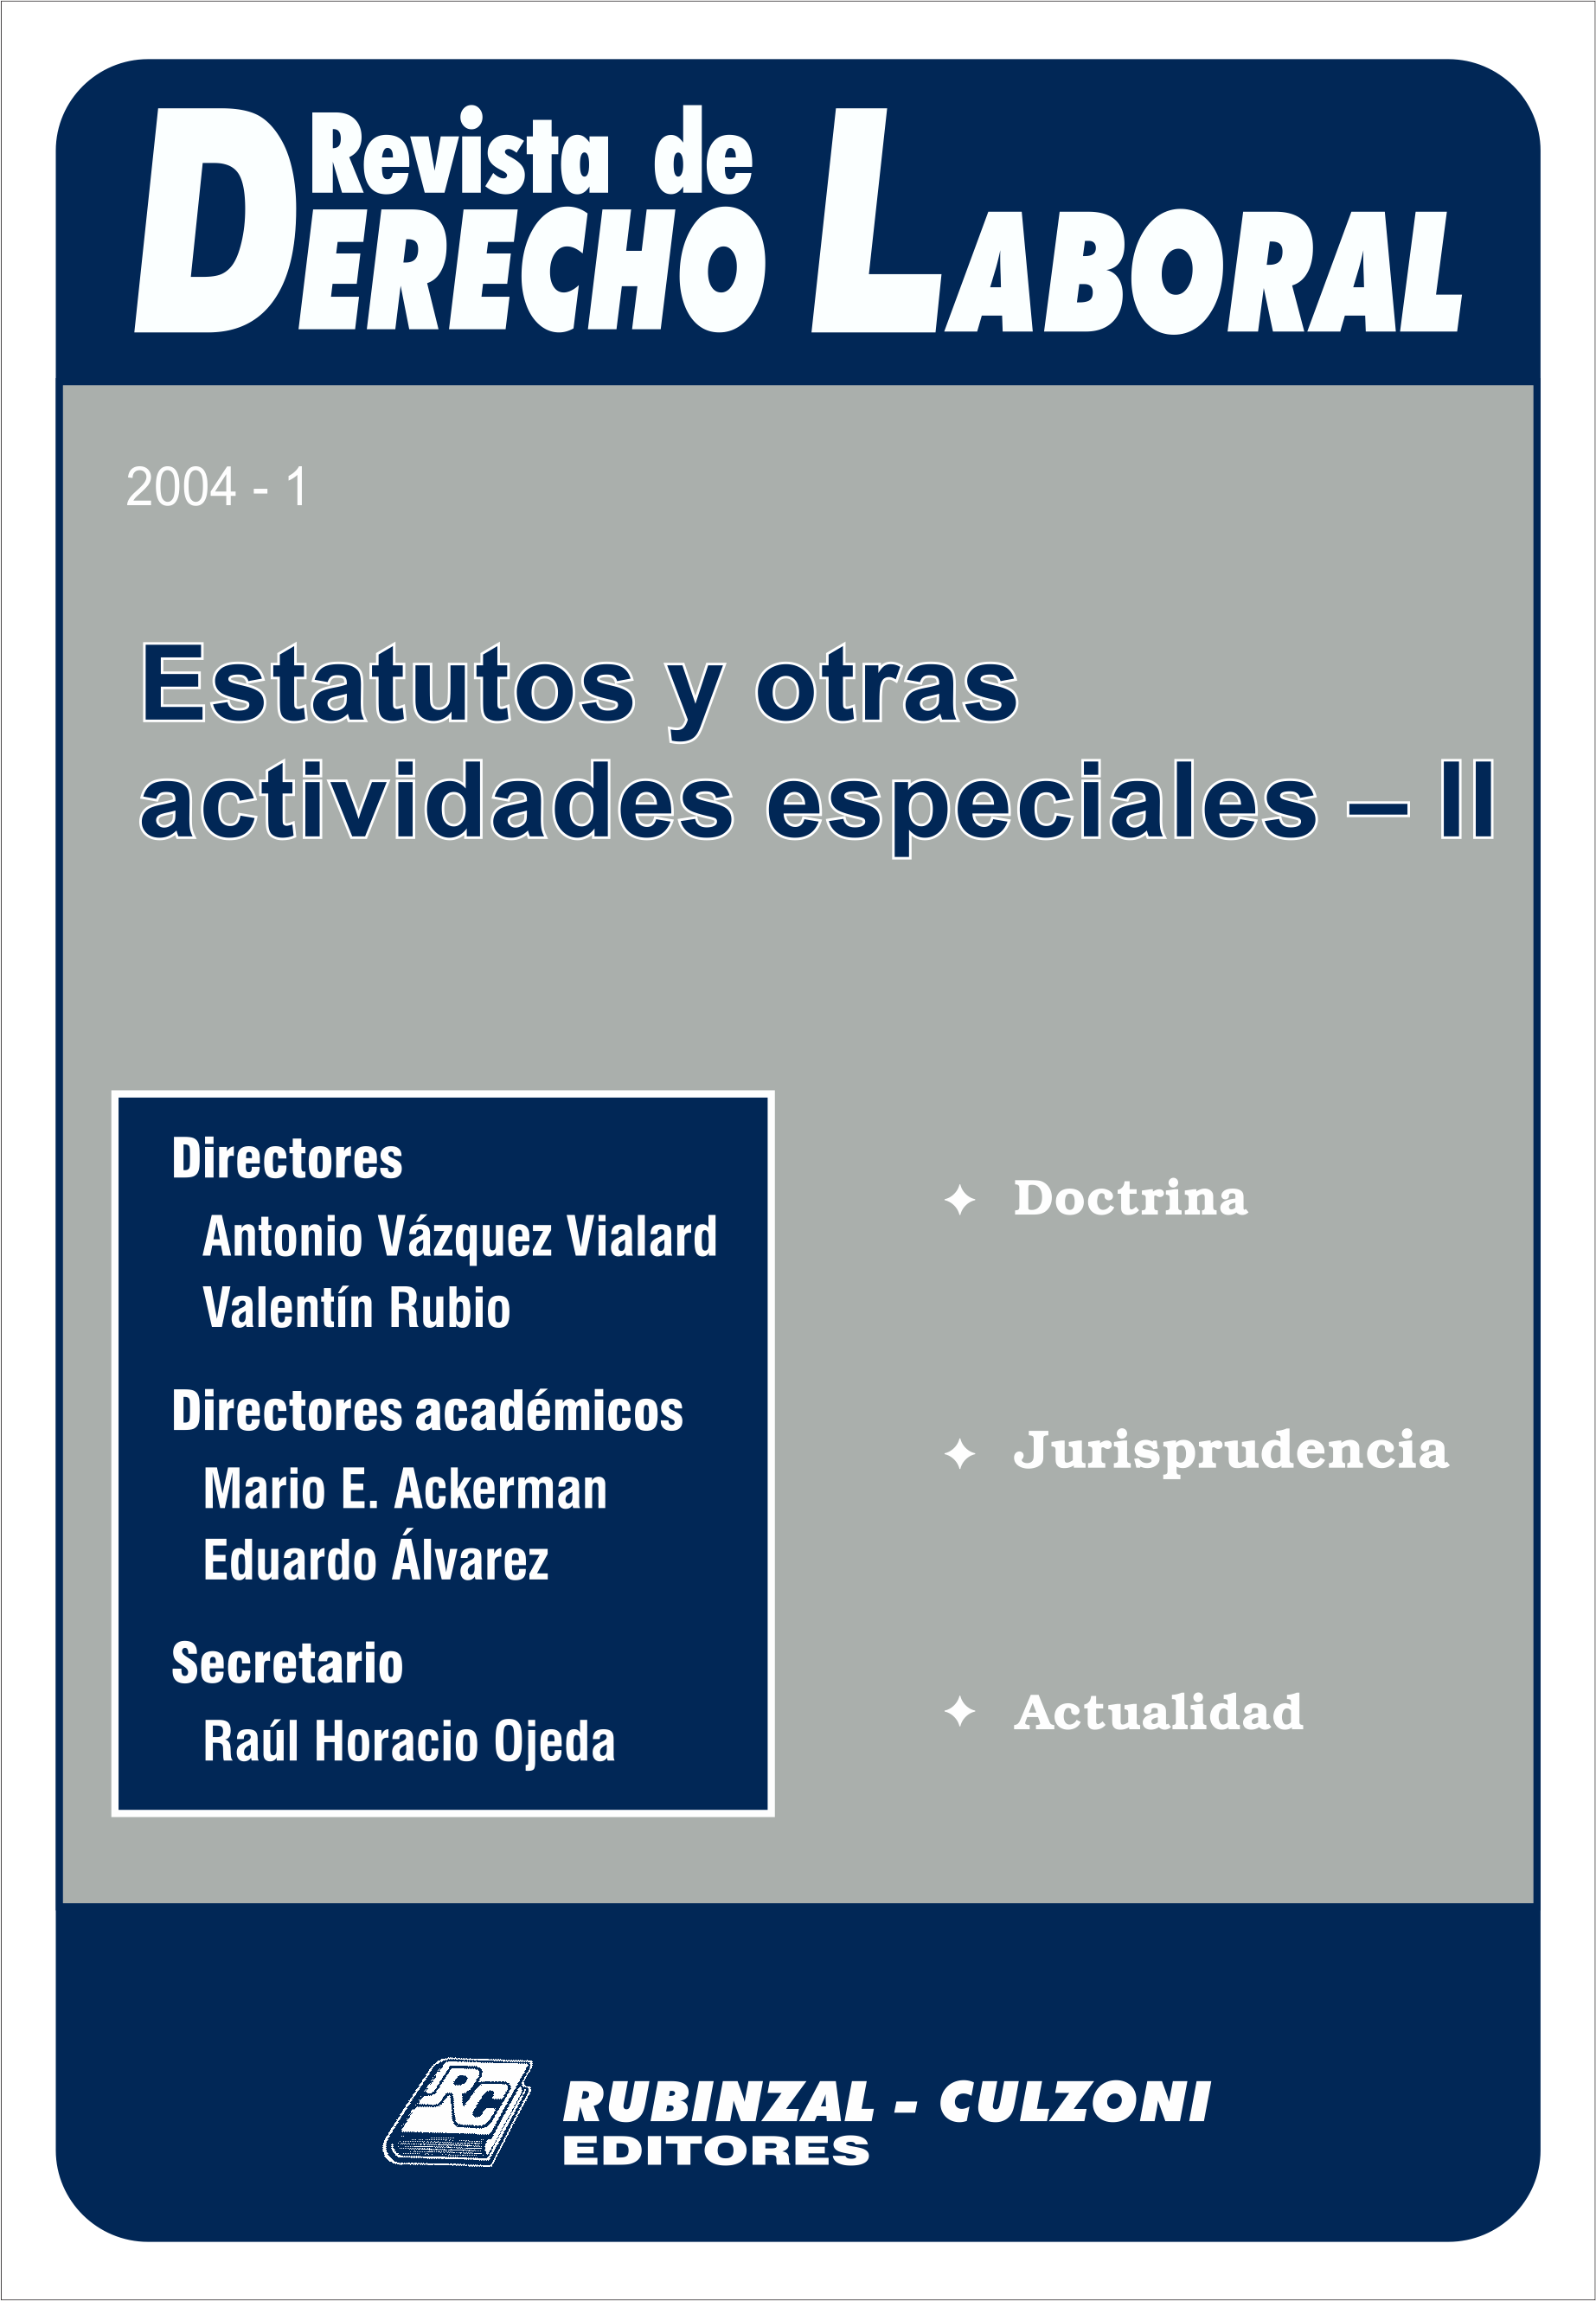 Revista de Derecho Laboral - Estatutos y otras actividades especiales II.